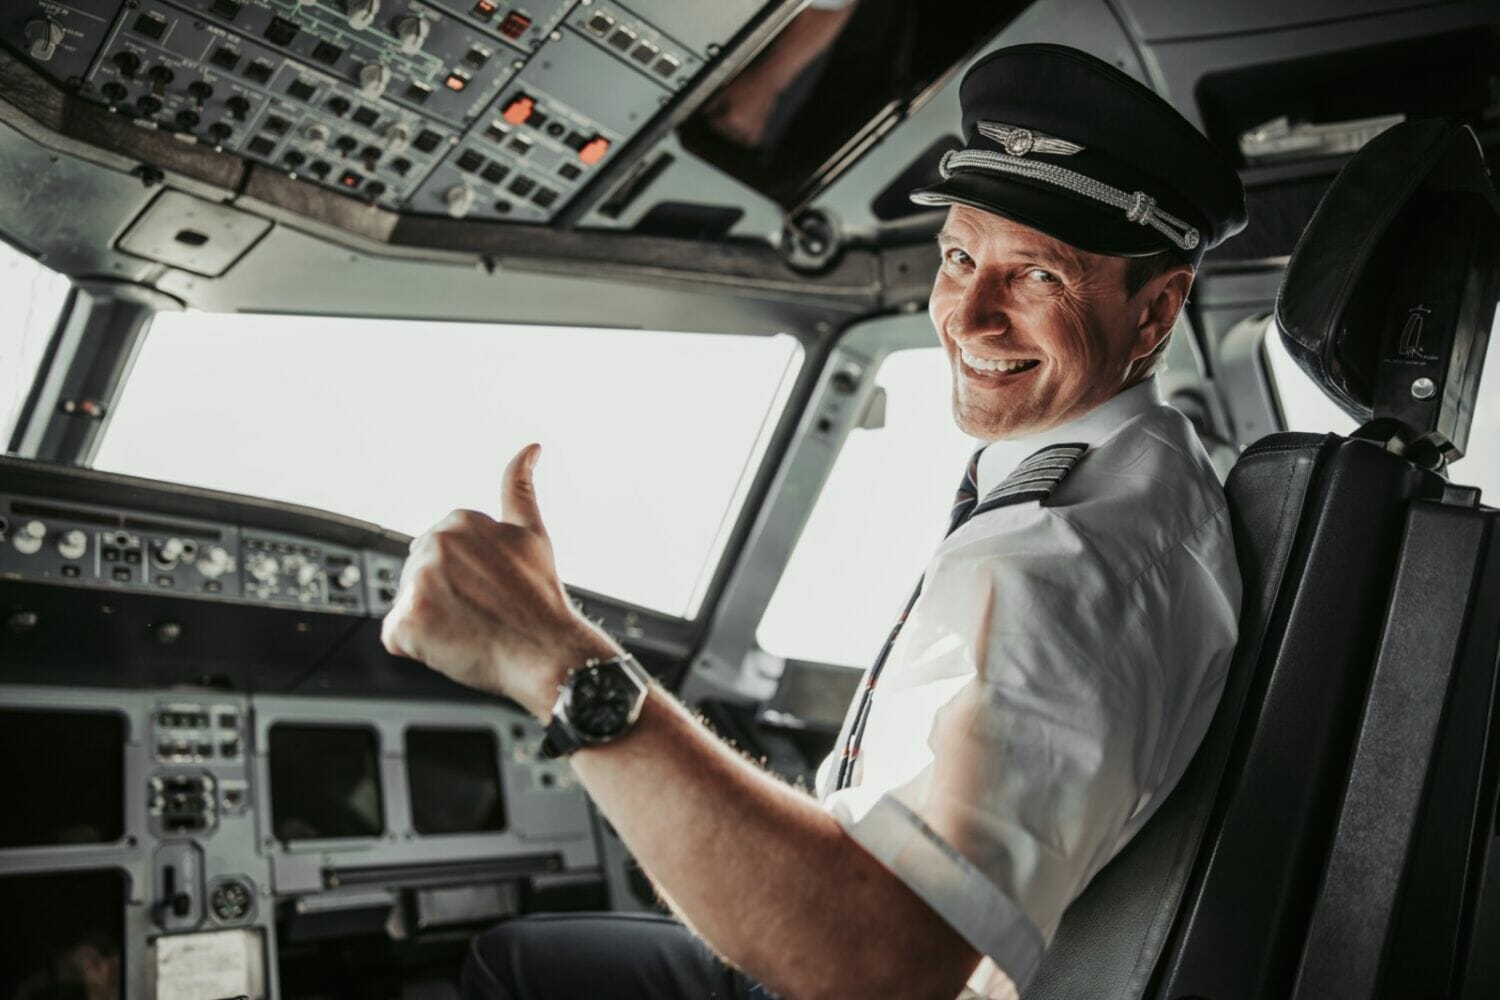 pilot-job-prospects-post-training-flightdeckfriend